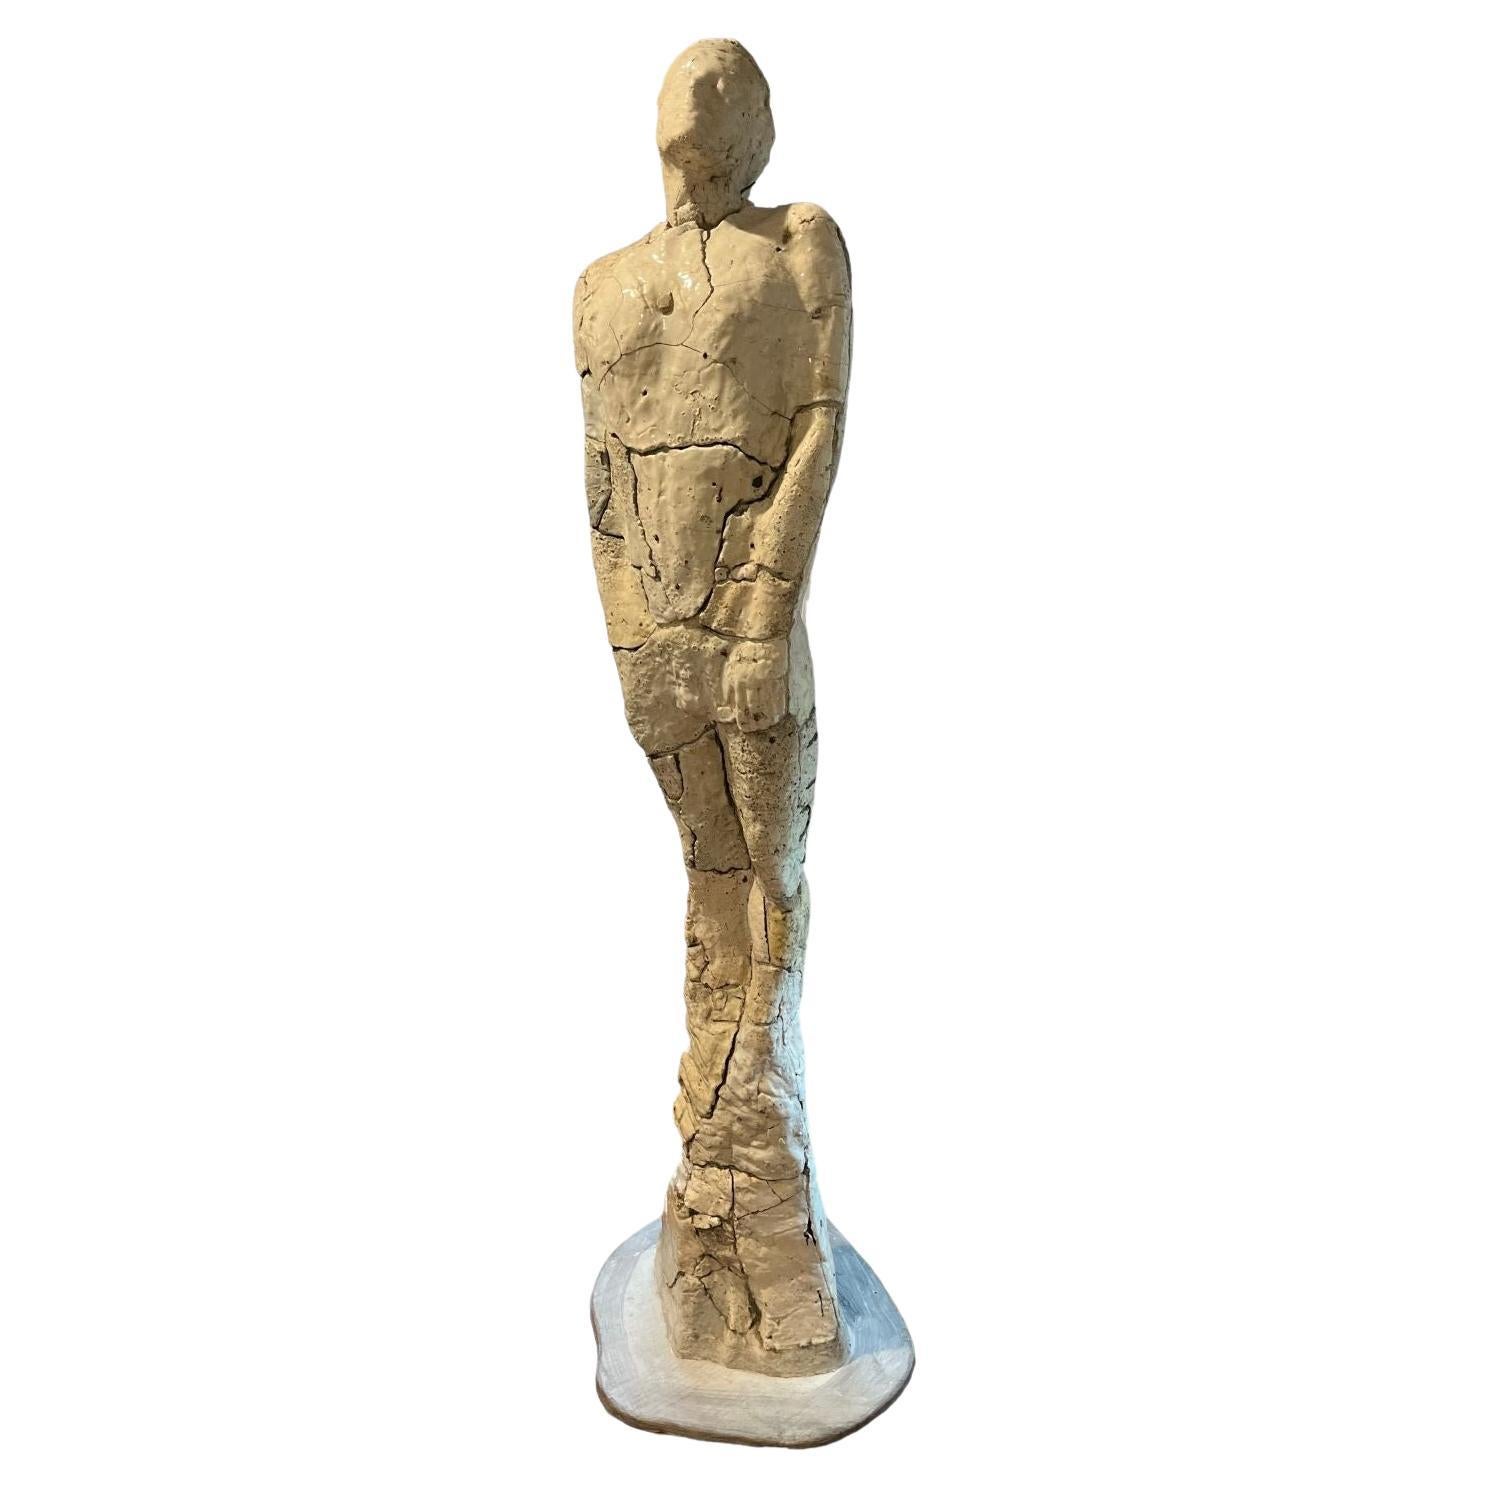 Modernist Ceramic Life-Size Sculpture  “Restoration of Hope” By Dan Snyder 1982 For Sale